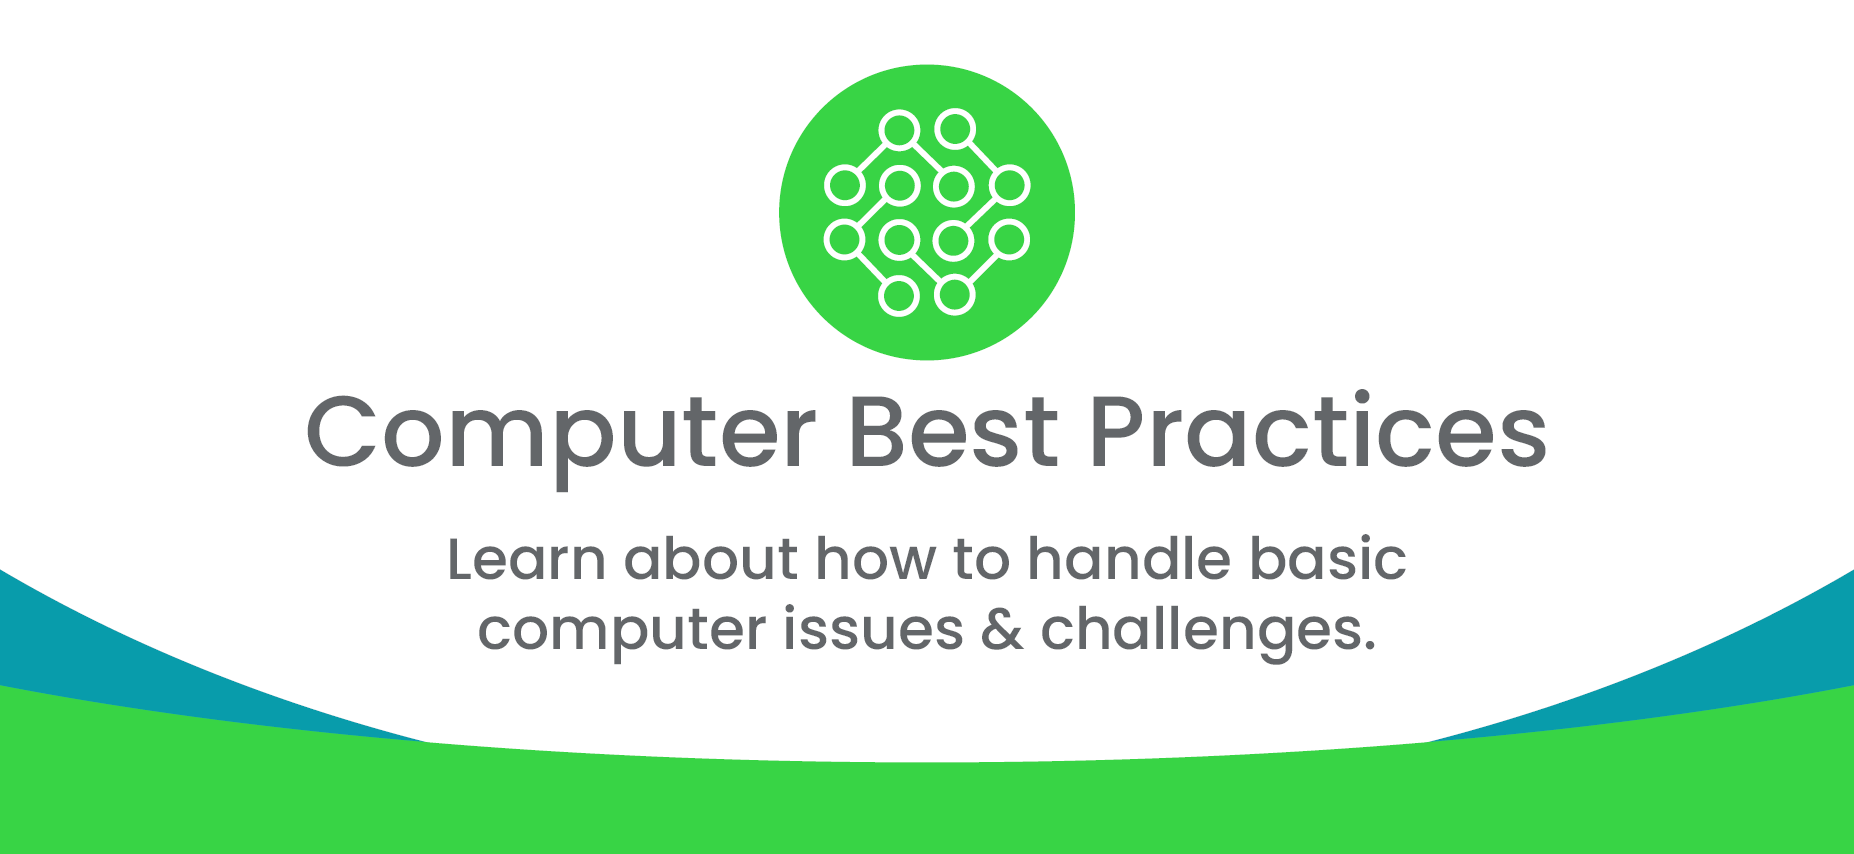 Computer Best Practices 